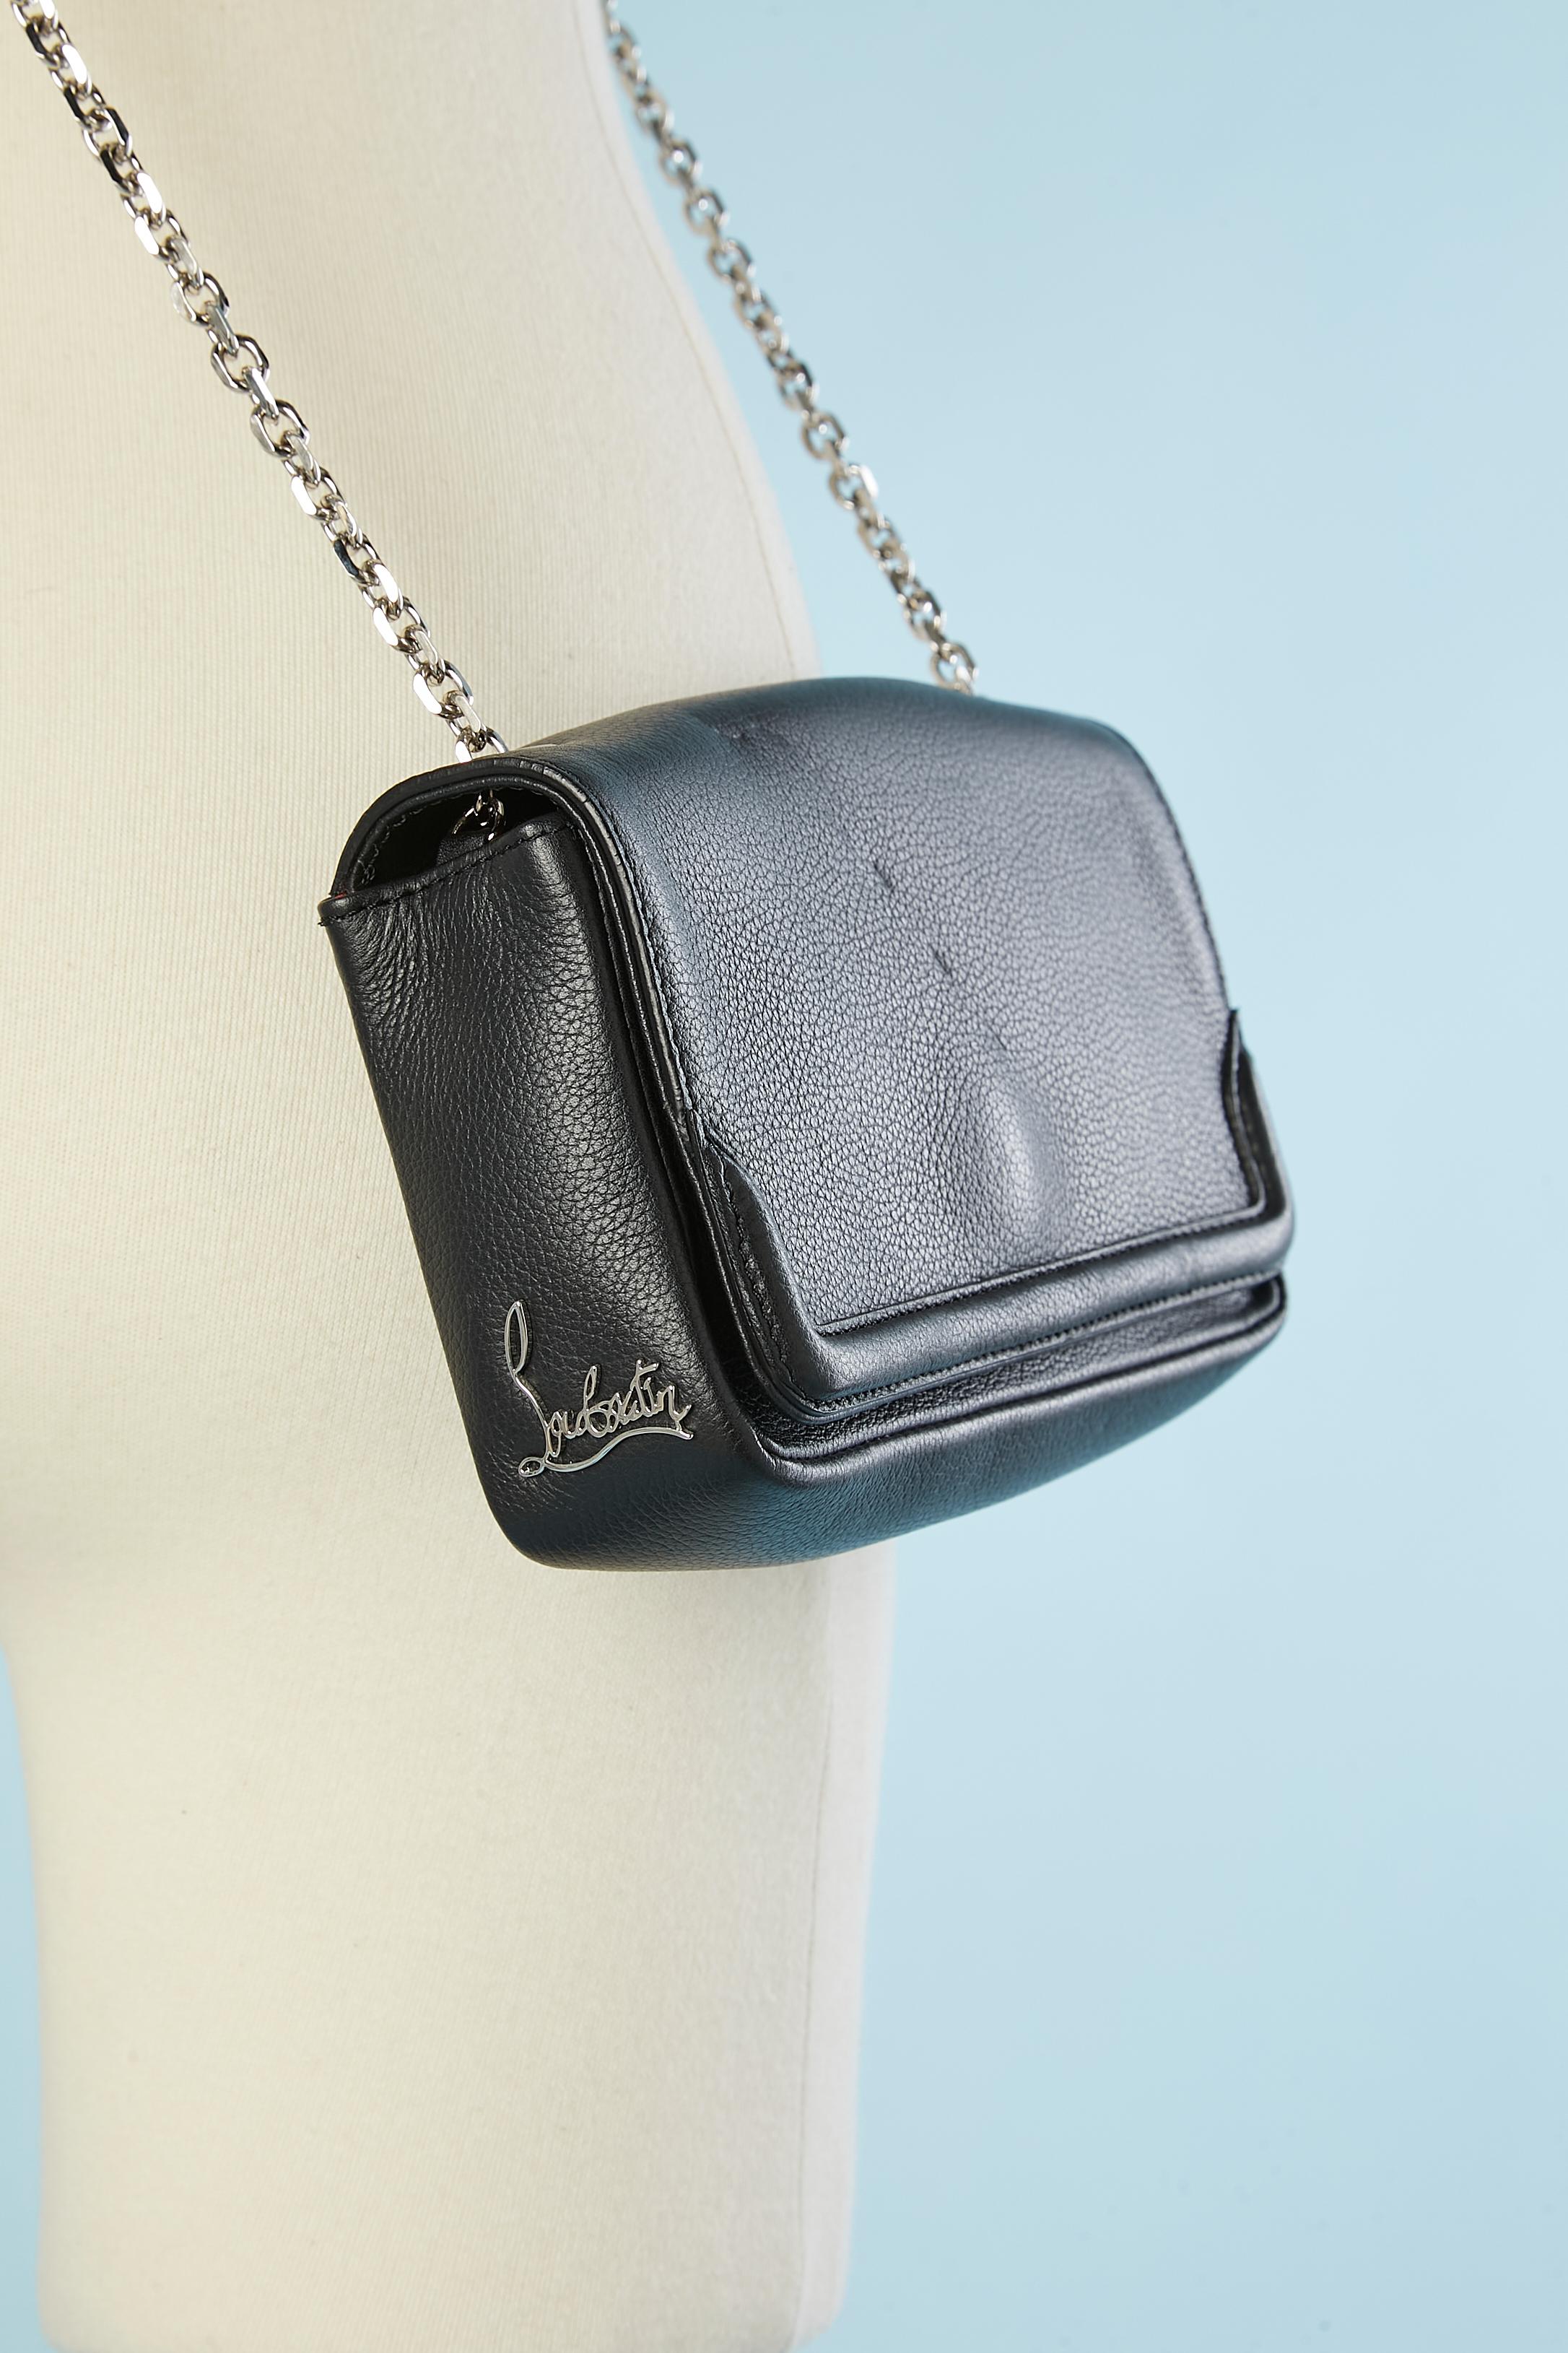 Artemis leather evening bag with Paris site-sight shoulder strap C. Louboutin  For Sale 1